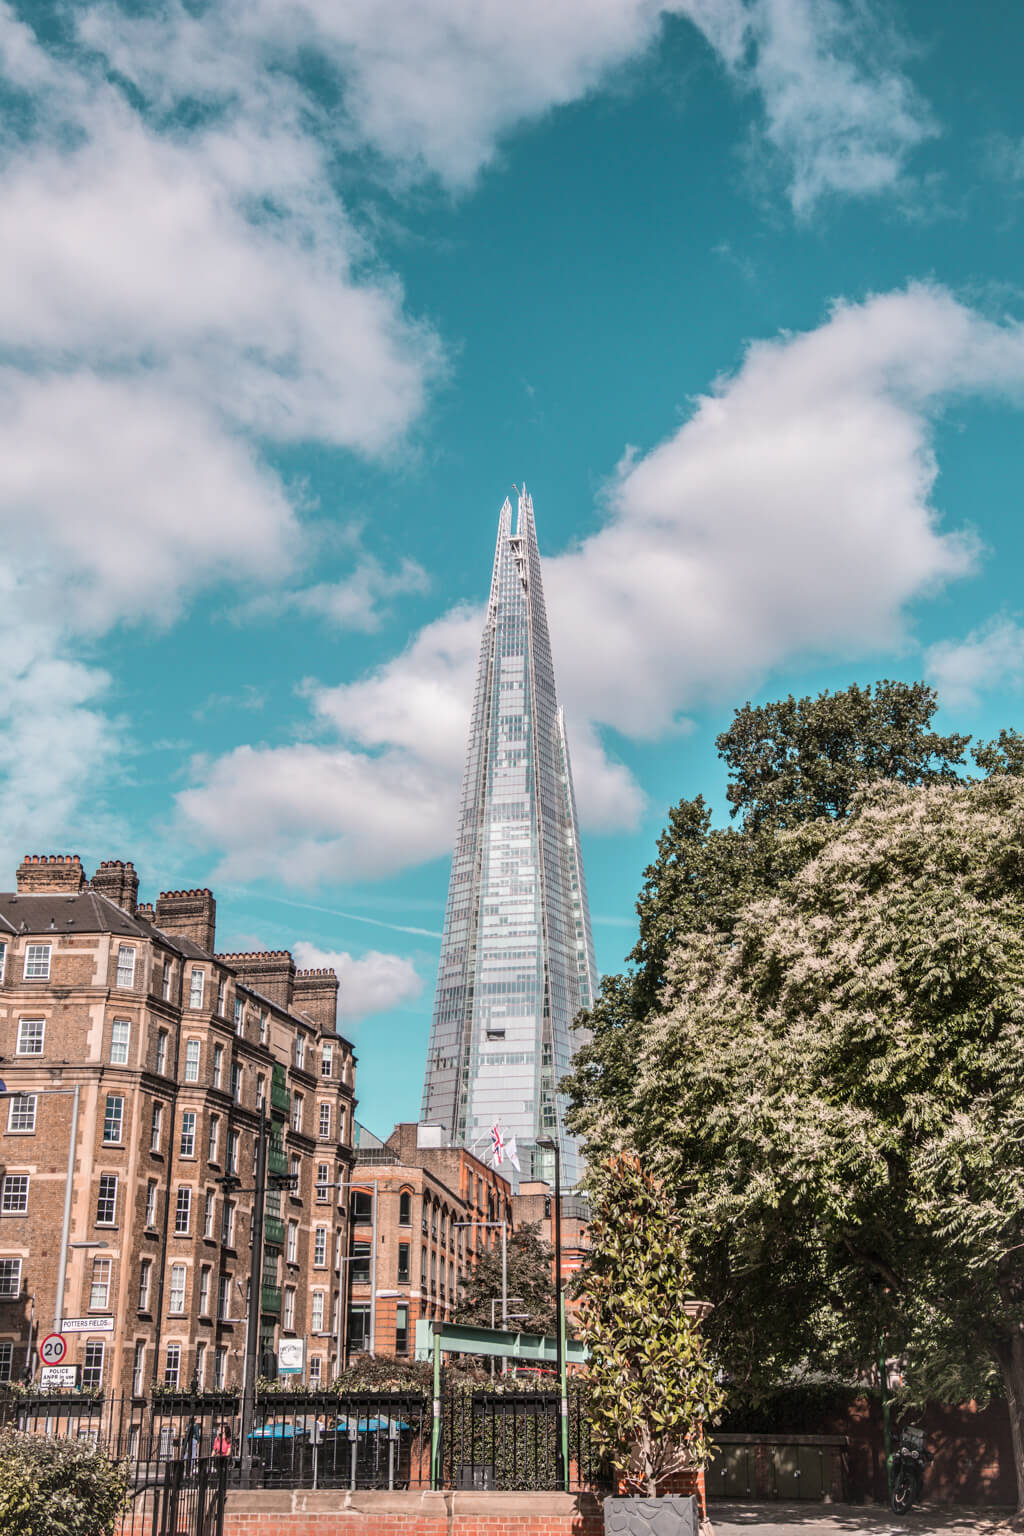 לונדון - מדריך תמונות לעיר הבירה של אנגליה | London photography guide